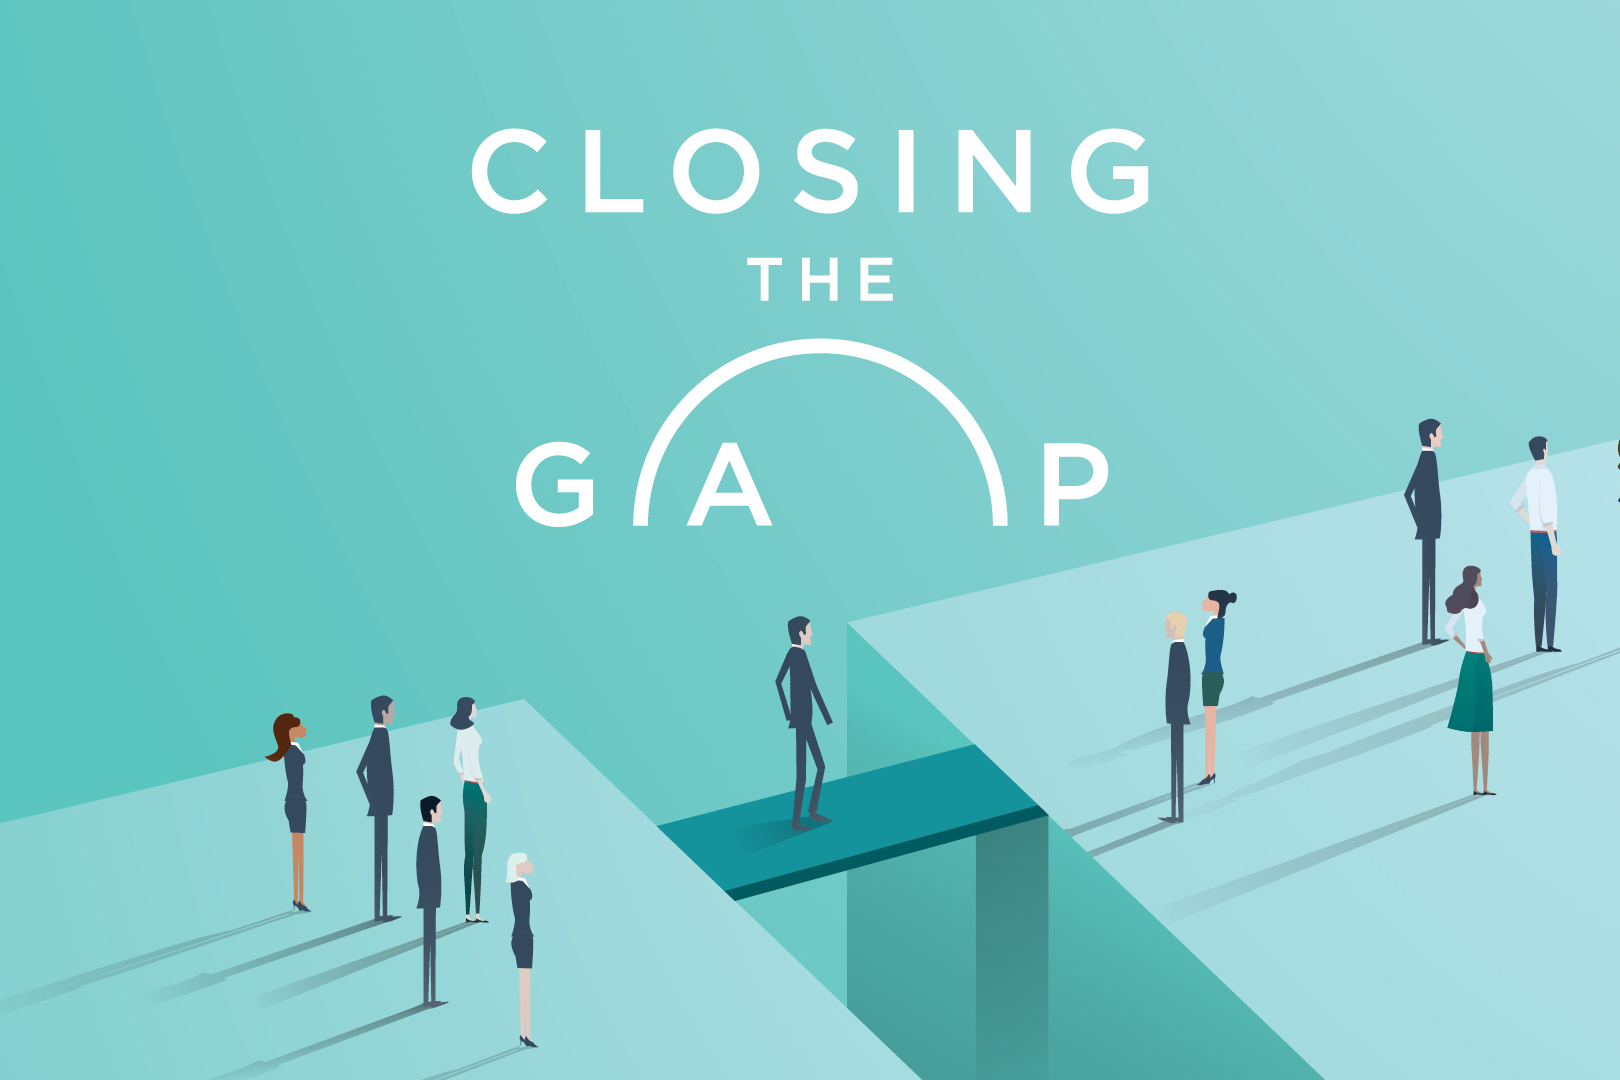 Closing gap